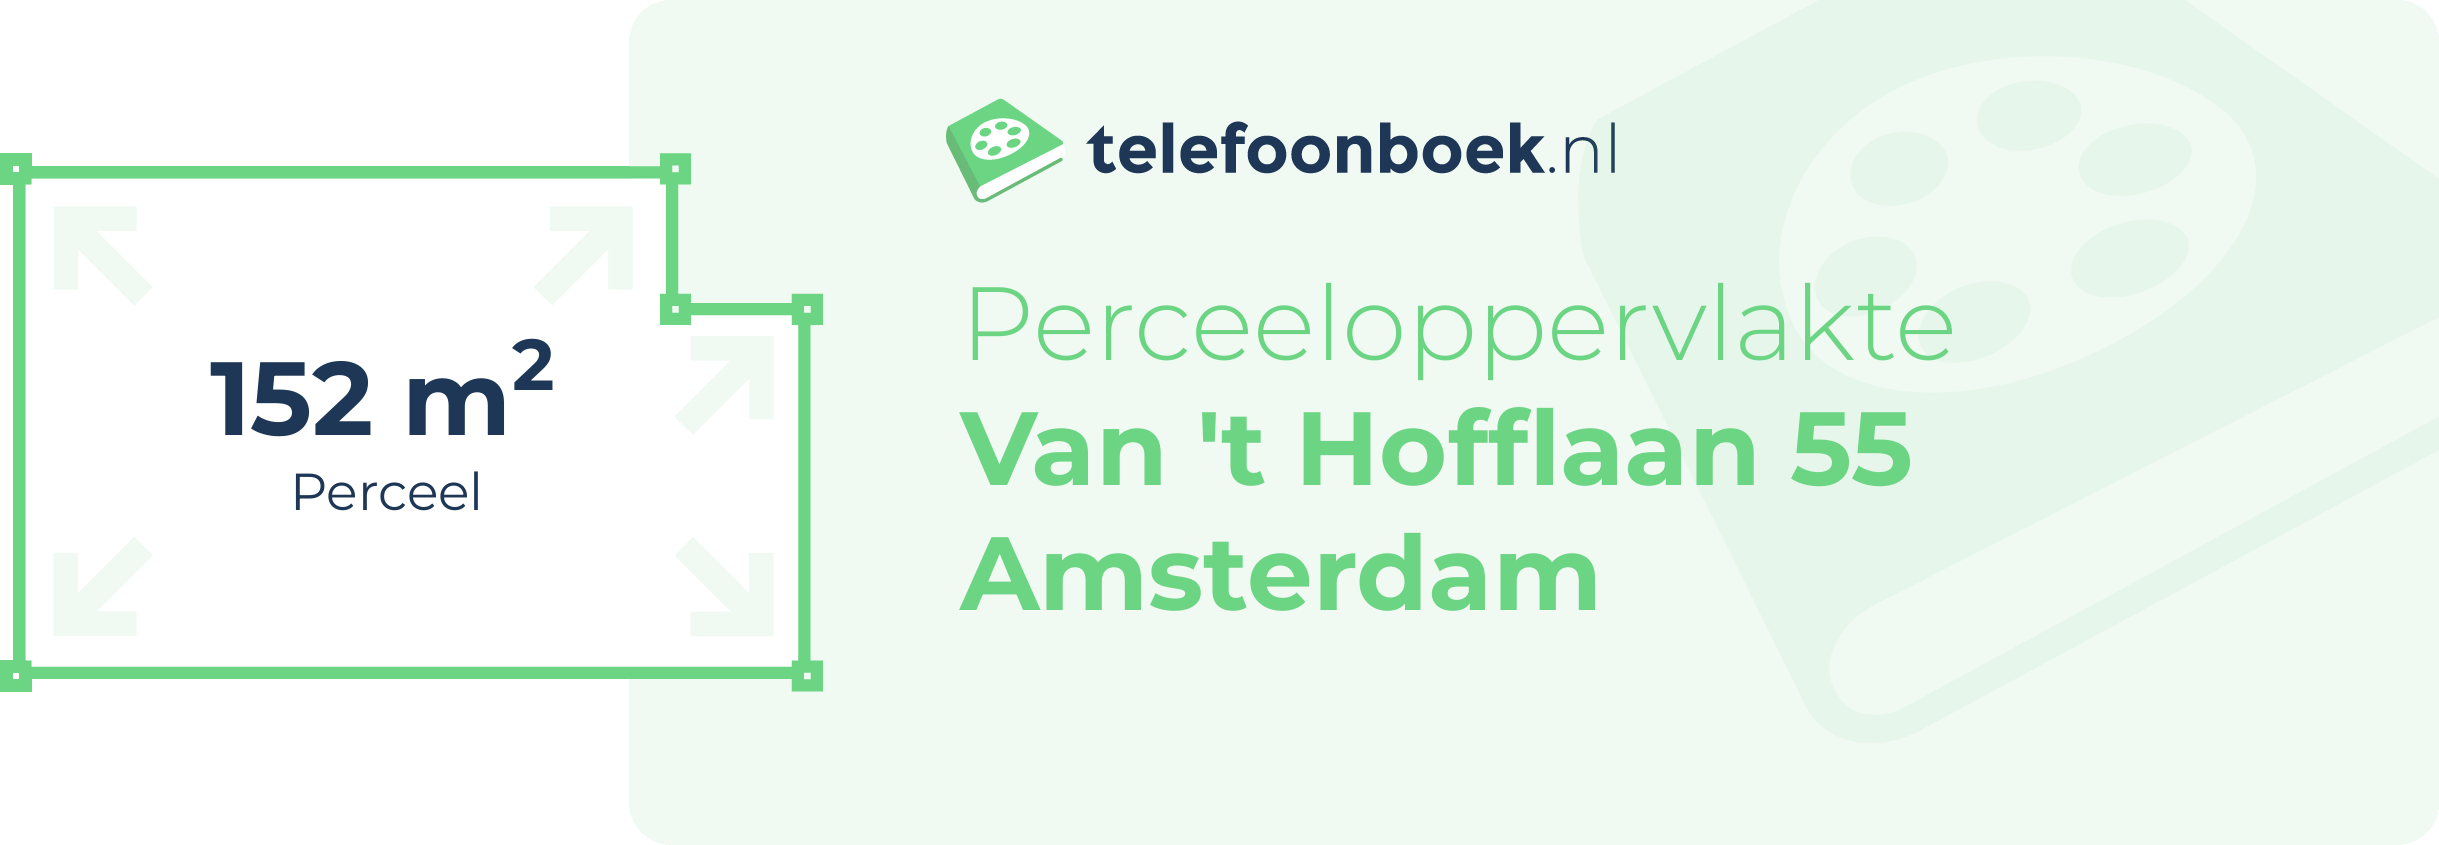 Perceeloppervlakte Van 't Hofflaan 55 Amsterdam